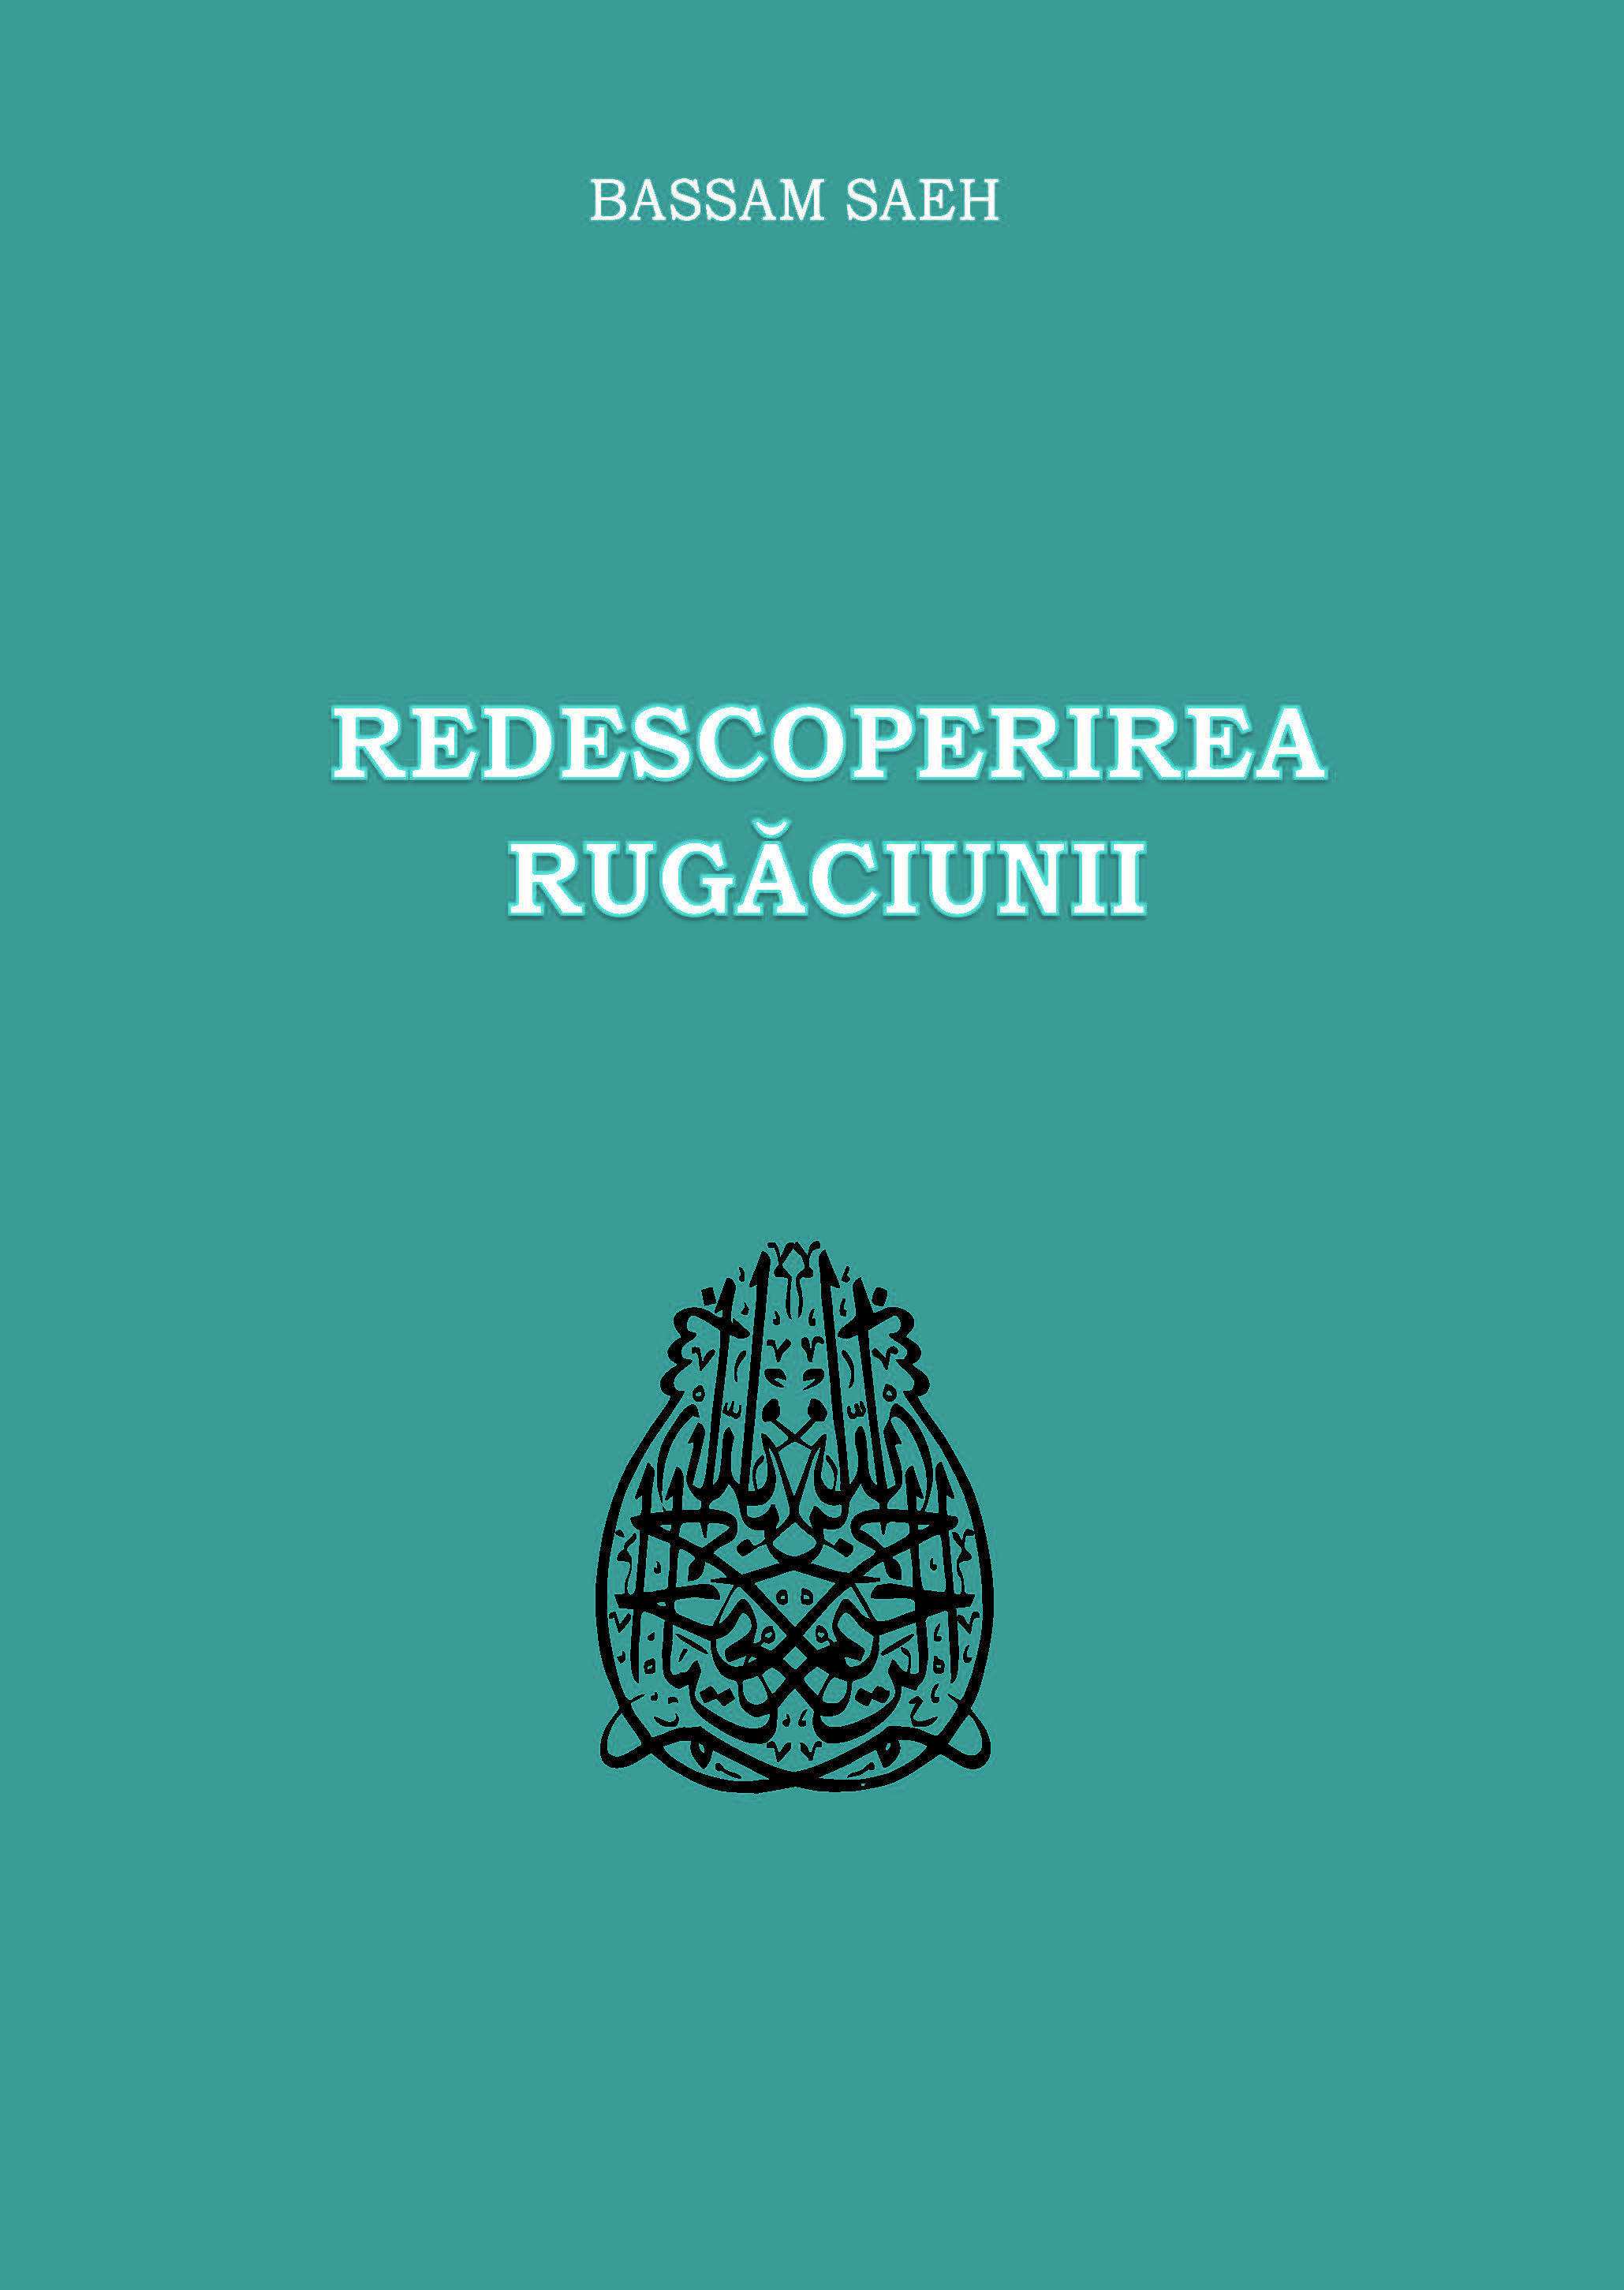 Romanian: Redescoperirea rugăciunii (Rediscovering Prayer)